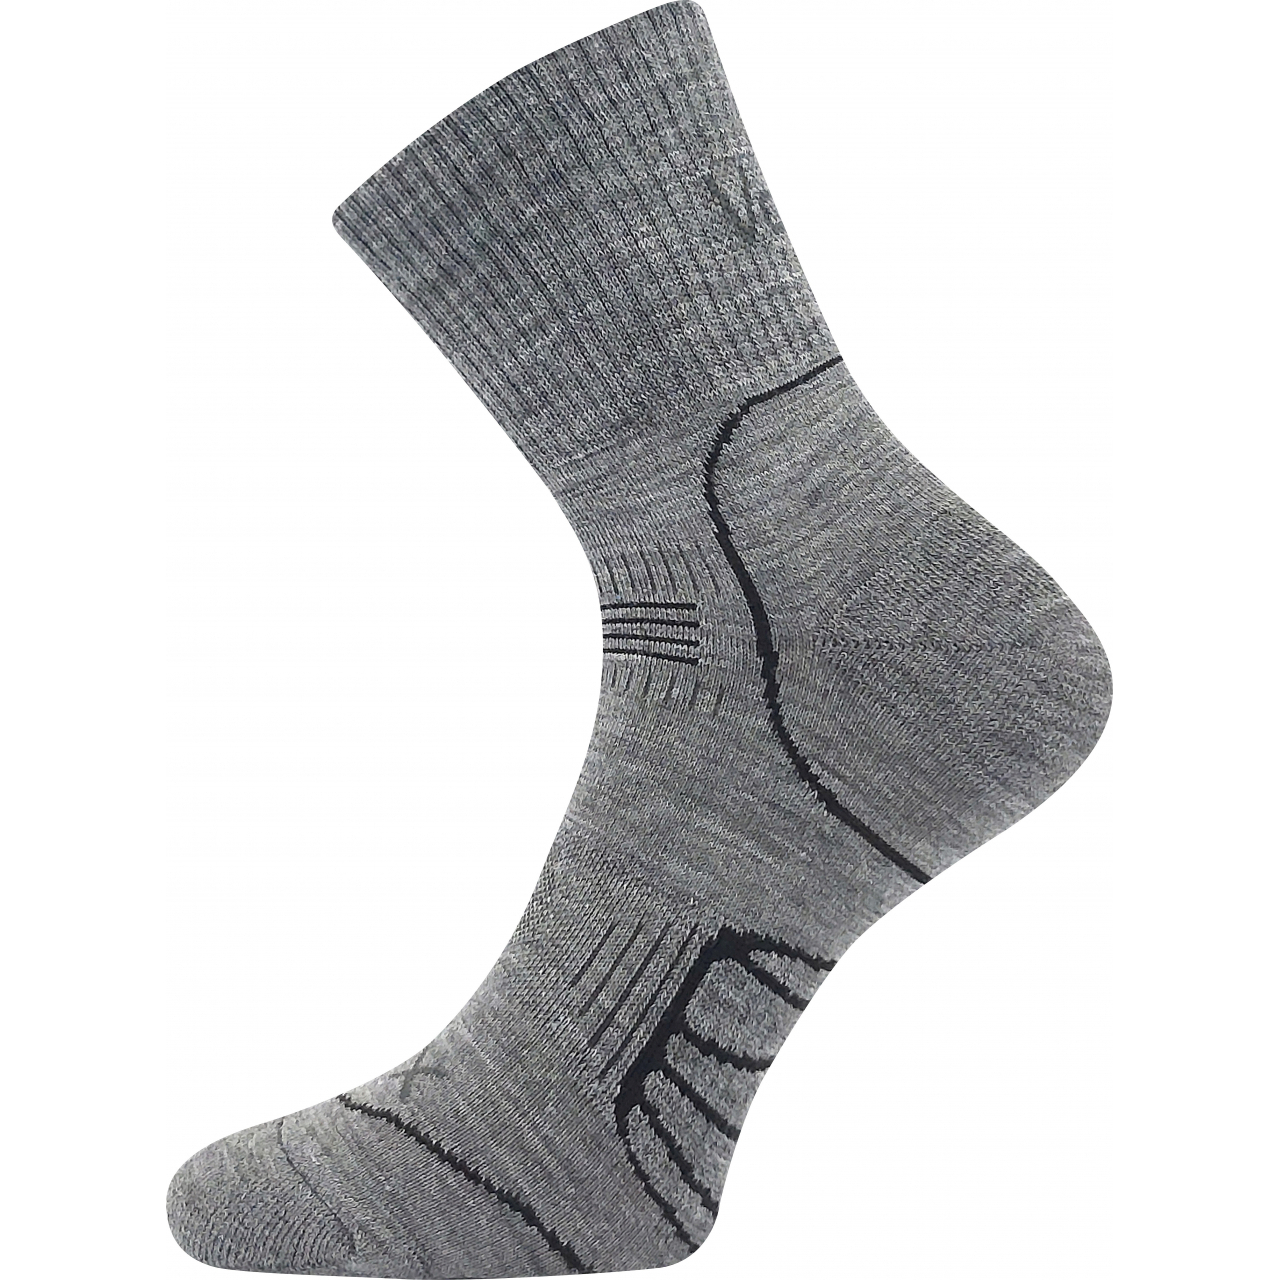 Ponožky cyklistické Voxx Falco - šedé, 43-46